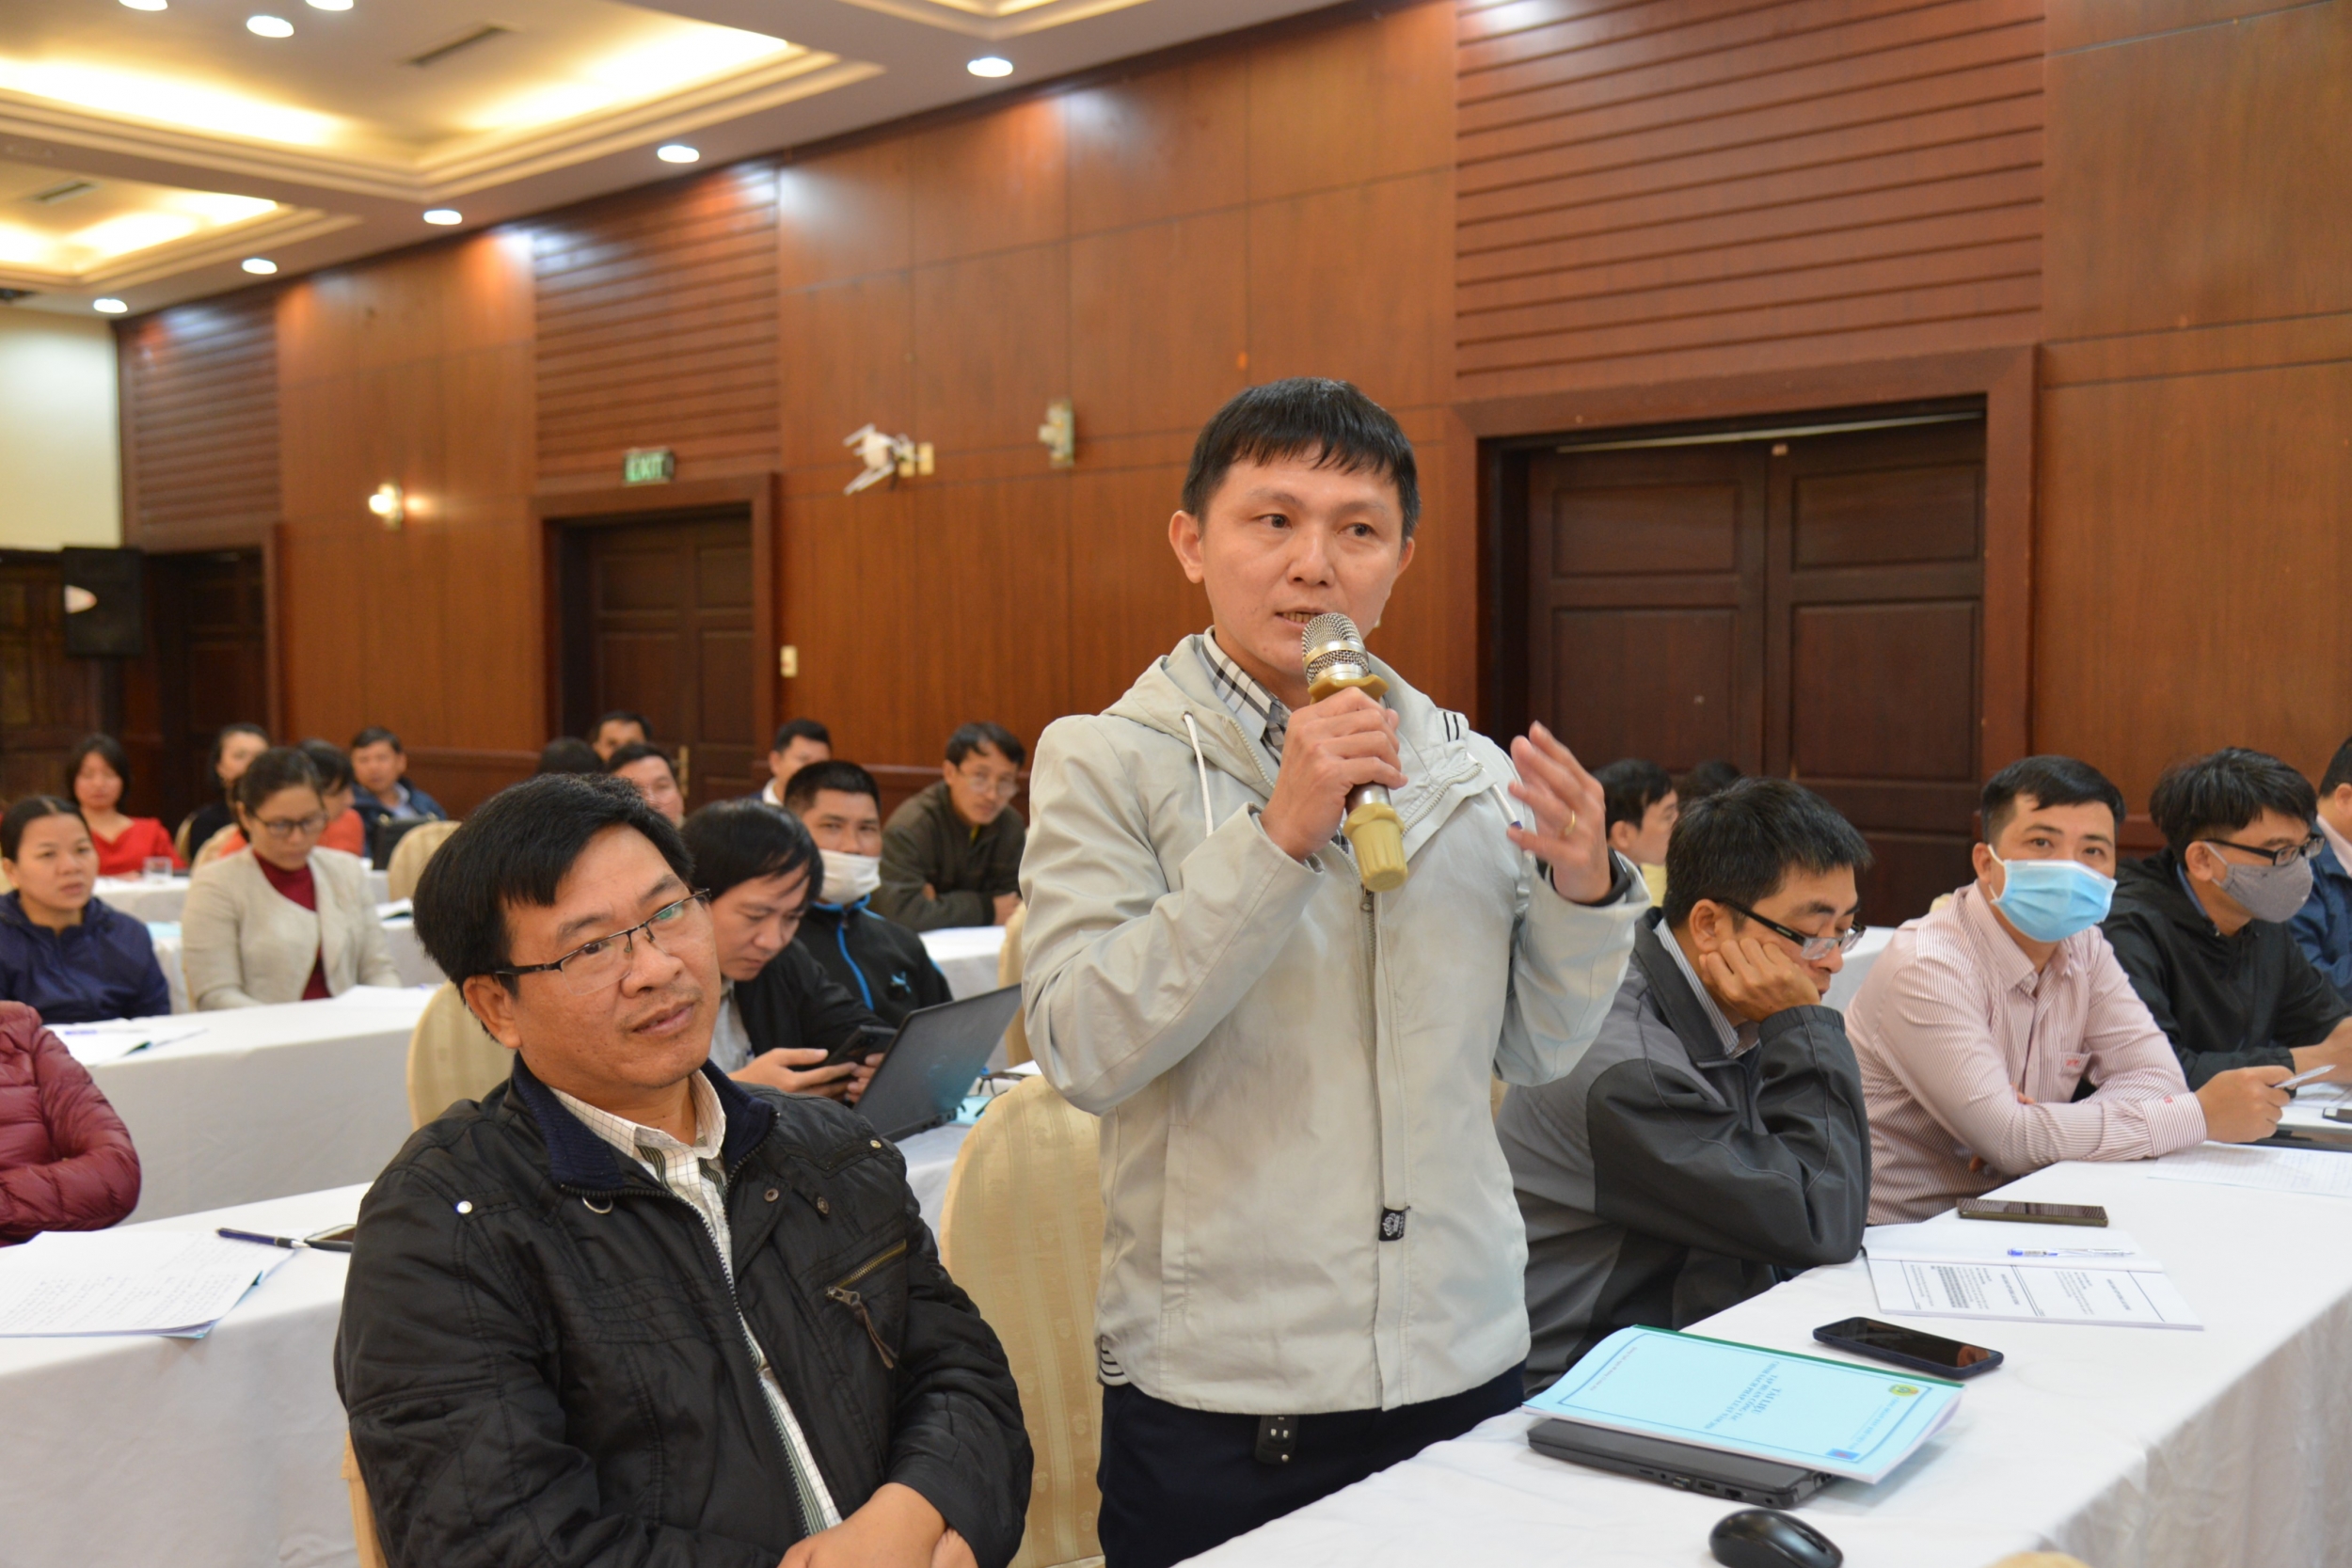 CĐ DKVN tổ chức Hội nghị Tập huấn công tác chính sách pháp luật năm 2020 tại miền Trung